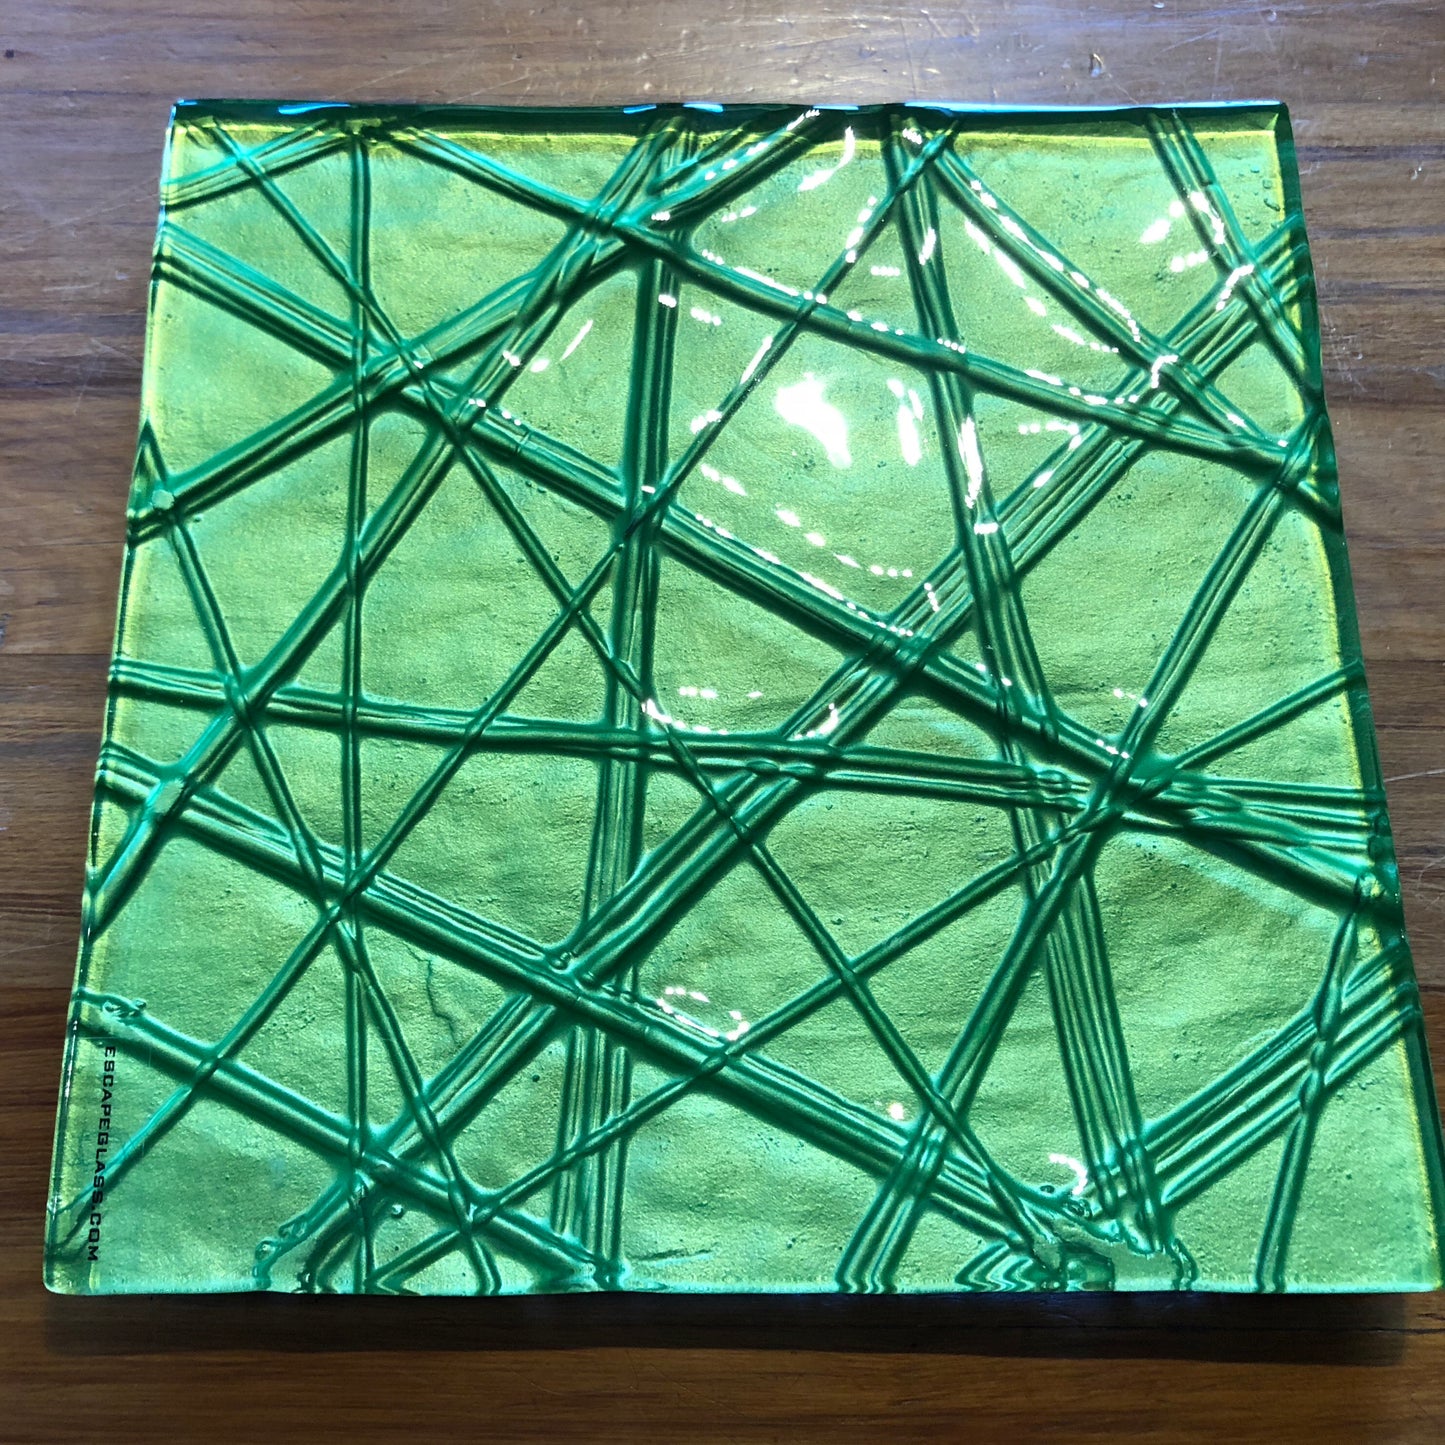 Viper Green Square - 25cm